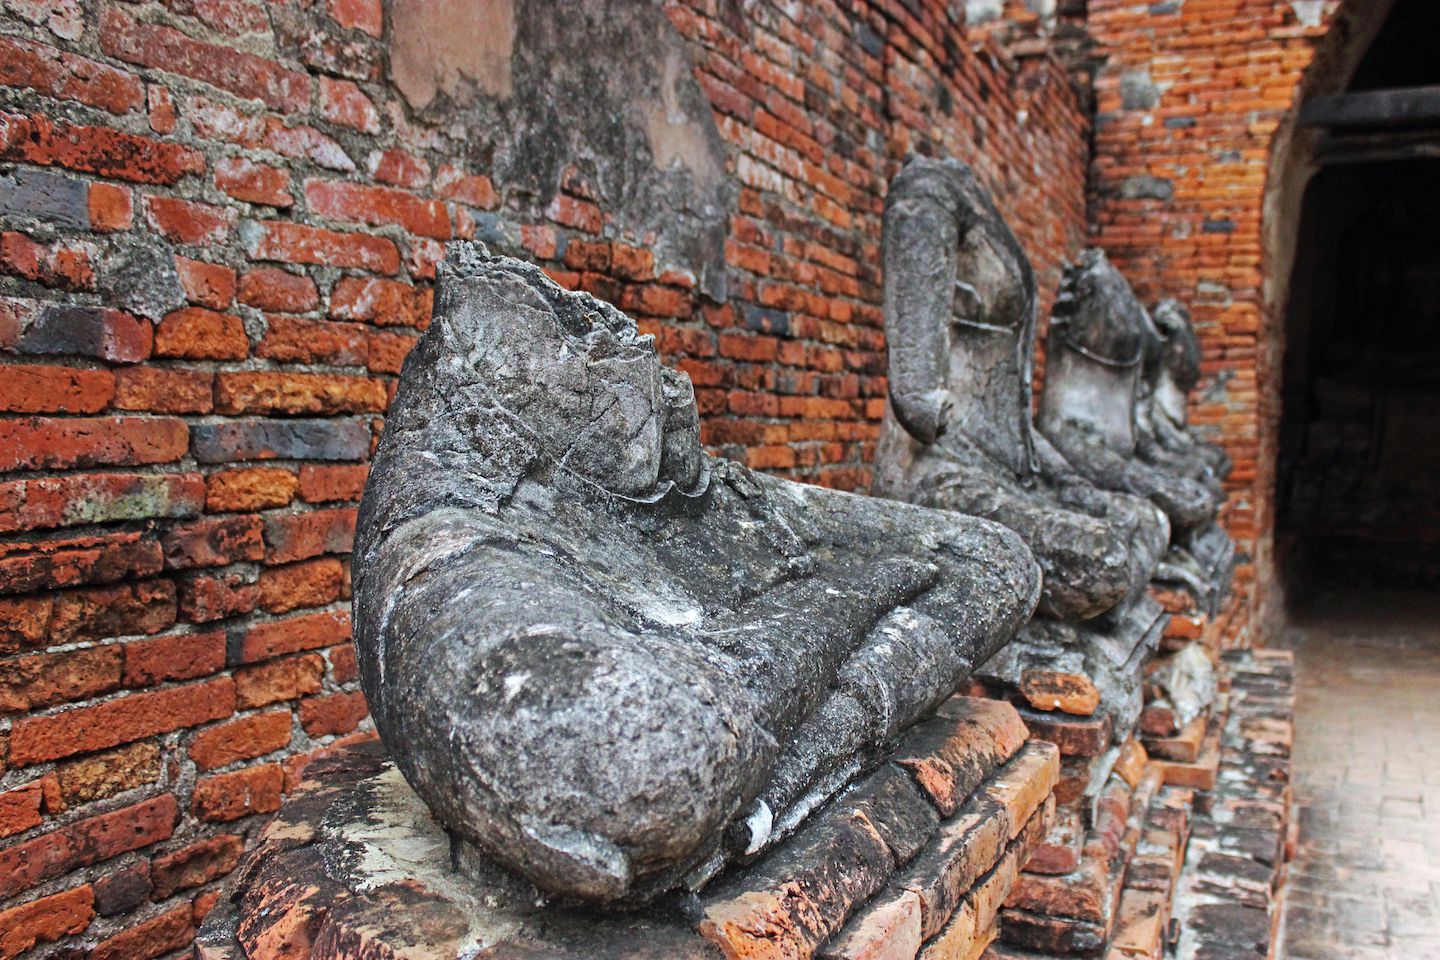 Damaged statues at Wat Chaiwatthanaram, Ayutthaya